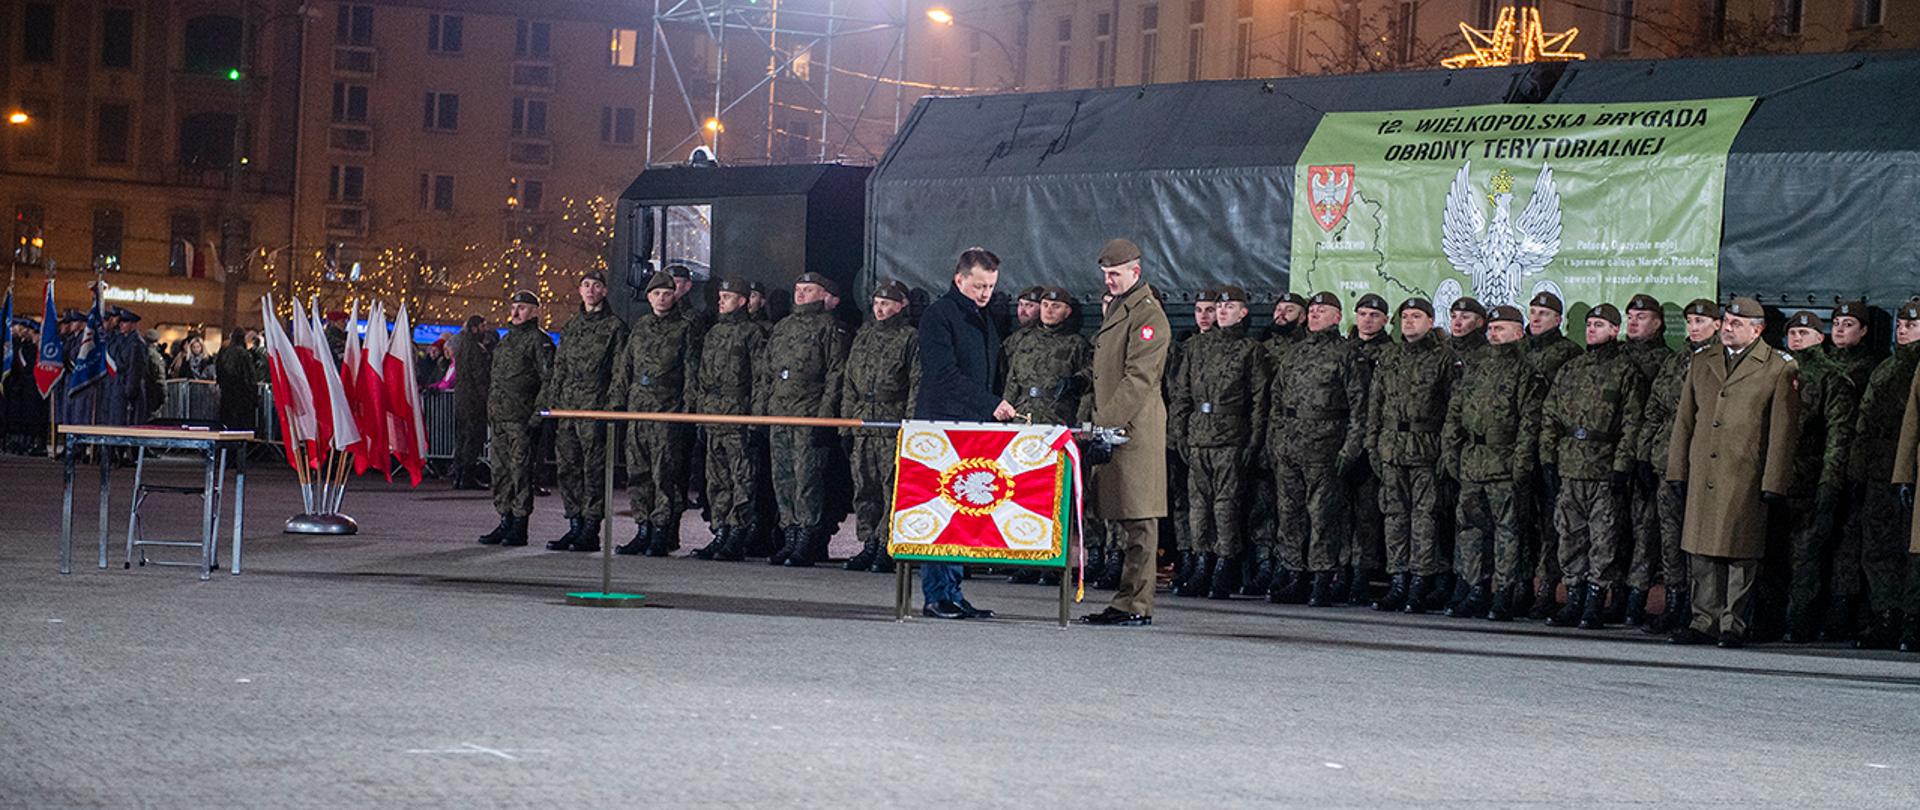 Minister Mariusz Błaszczak wręcza sztandar żołnierzom 12 Wielkopolskiej Brygady Obrony Terytorialnej podczas uroczystości w Poznaniu